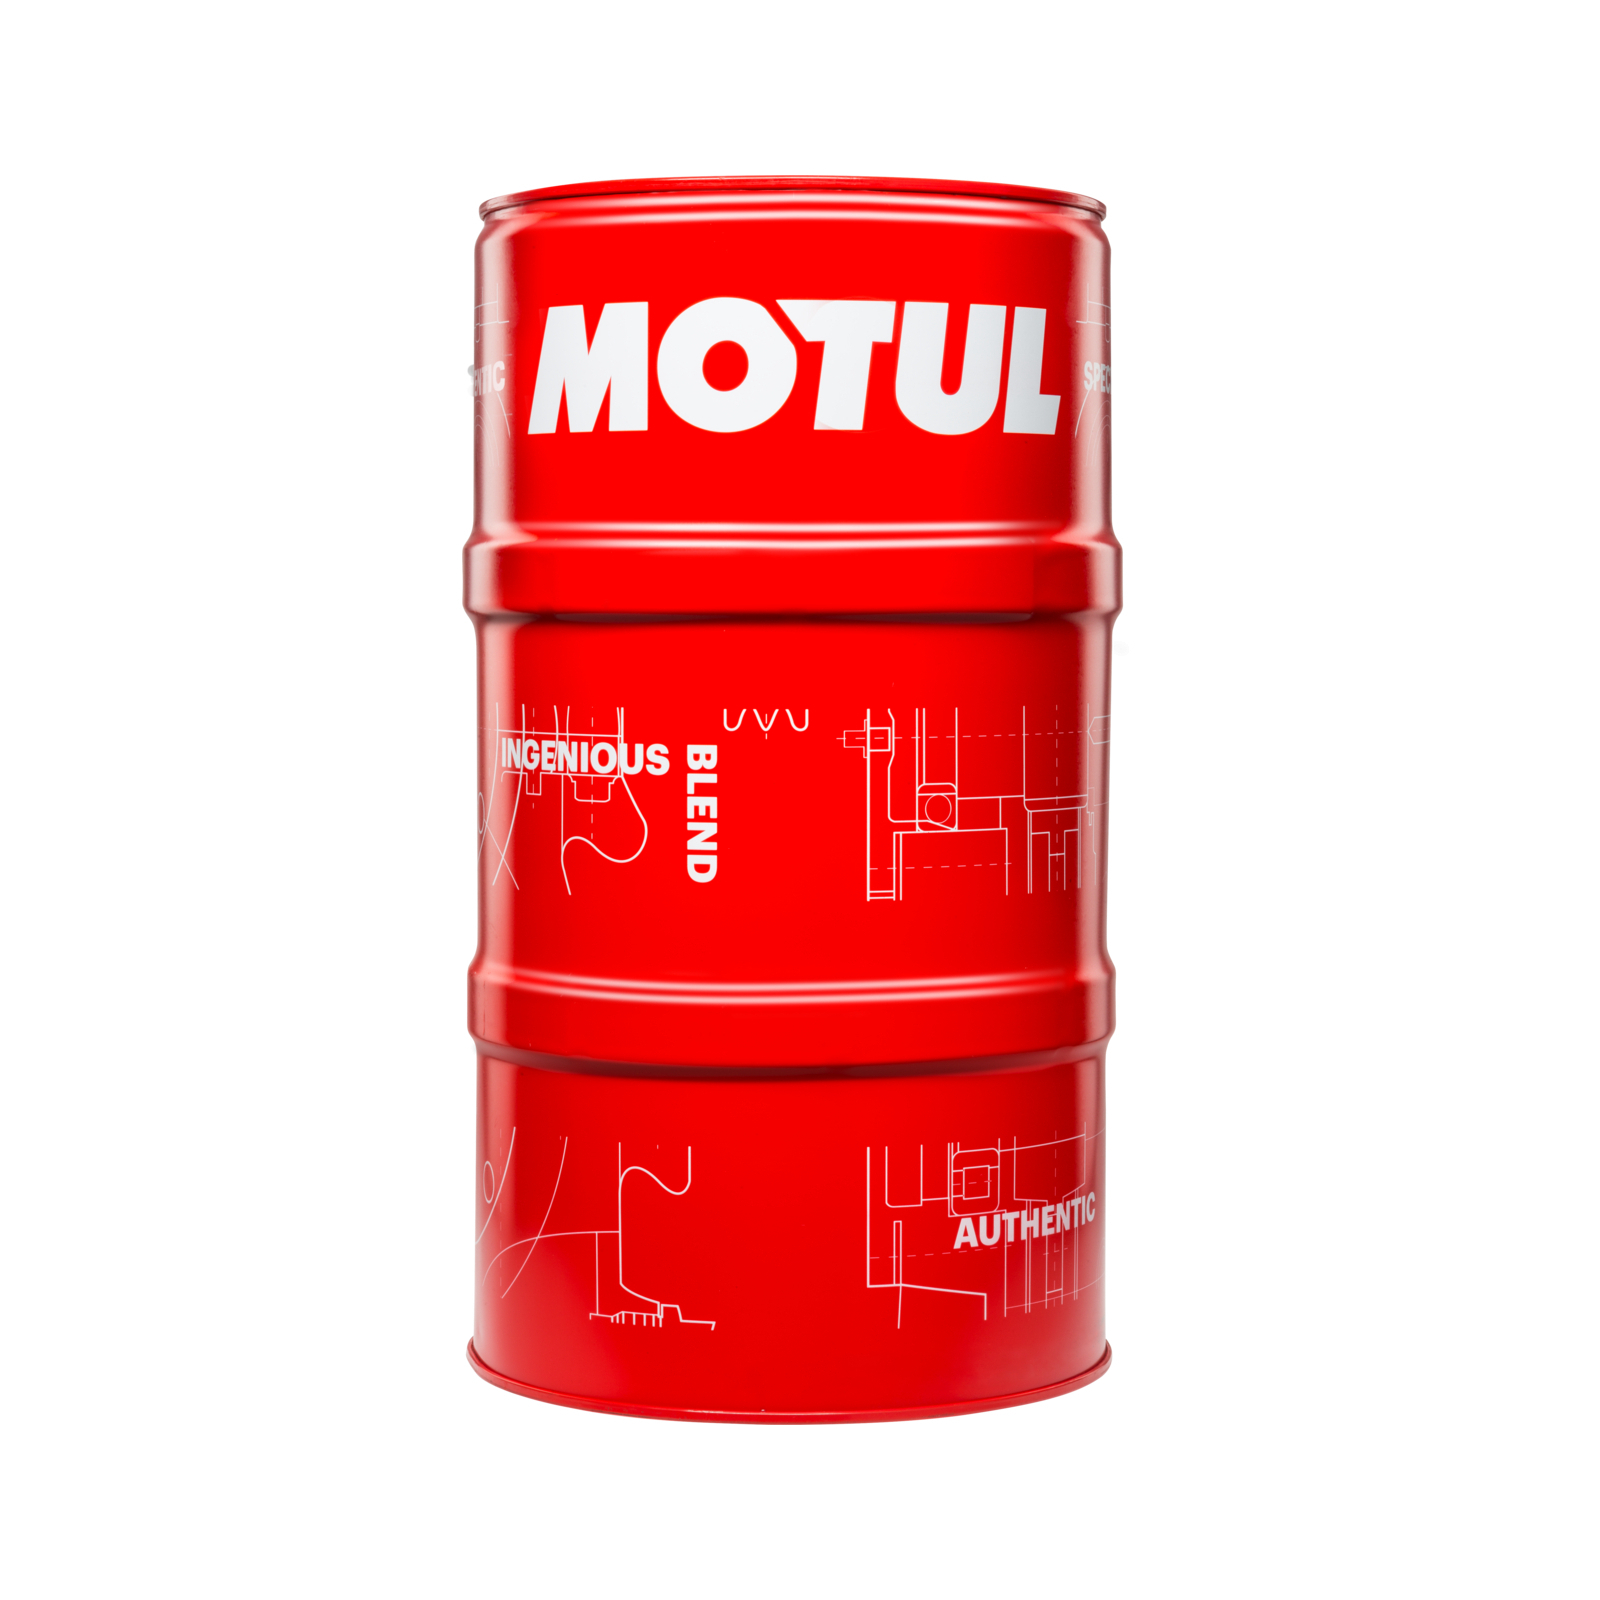 Моторное масло MOTUL 6100 Syn-clean SAE 5W40 4 л (854250)